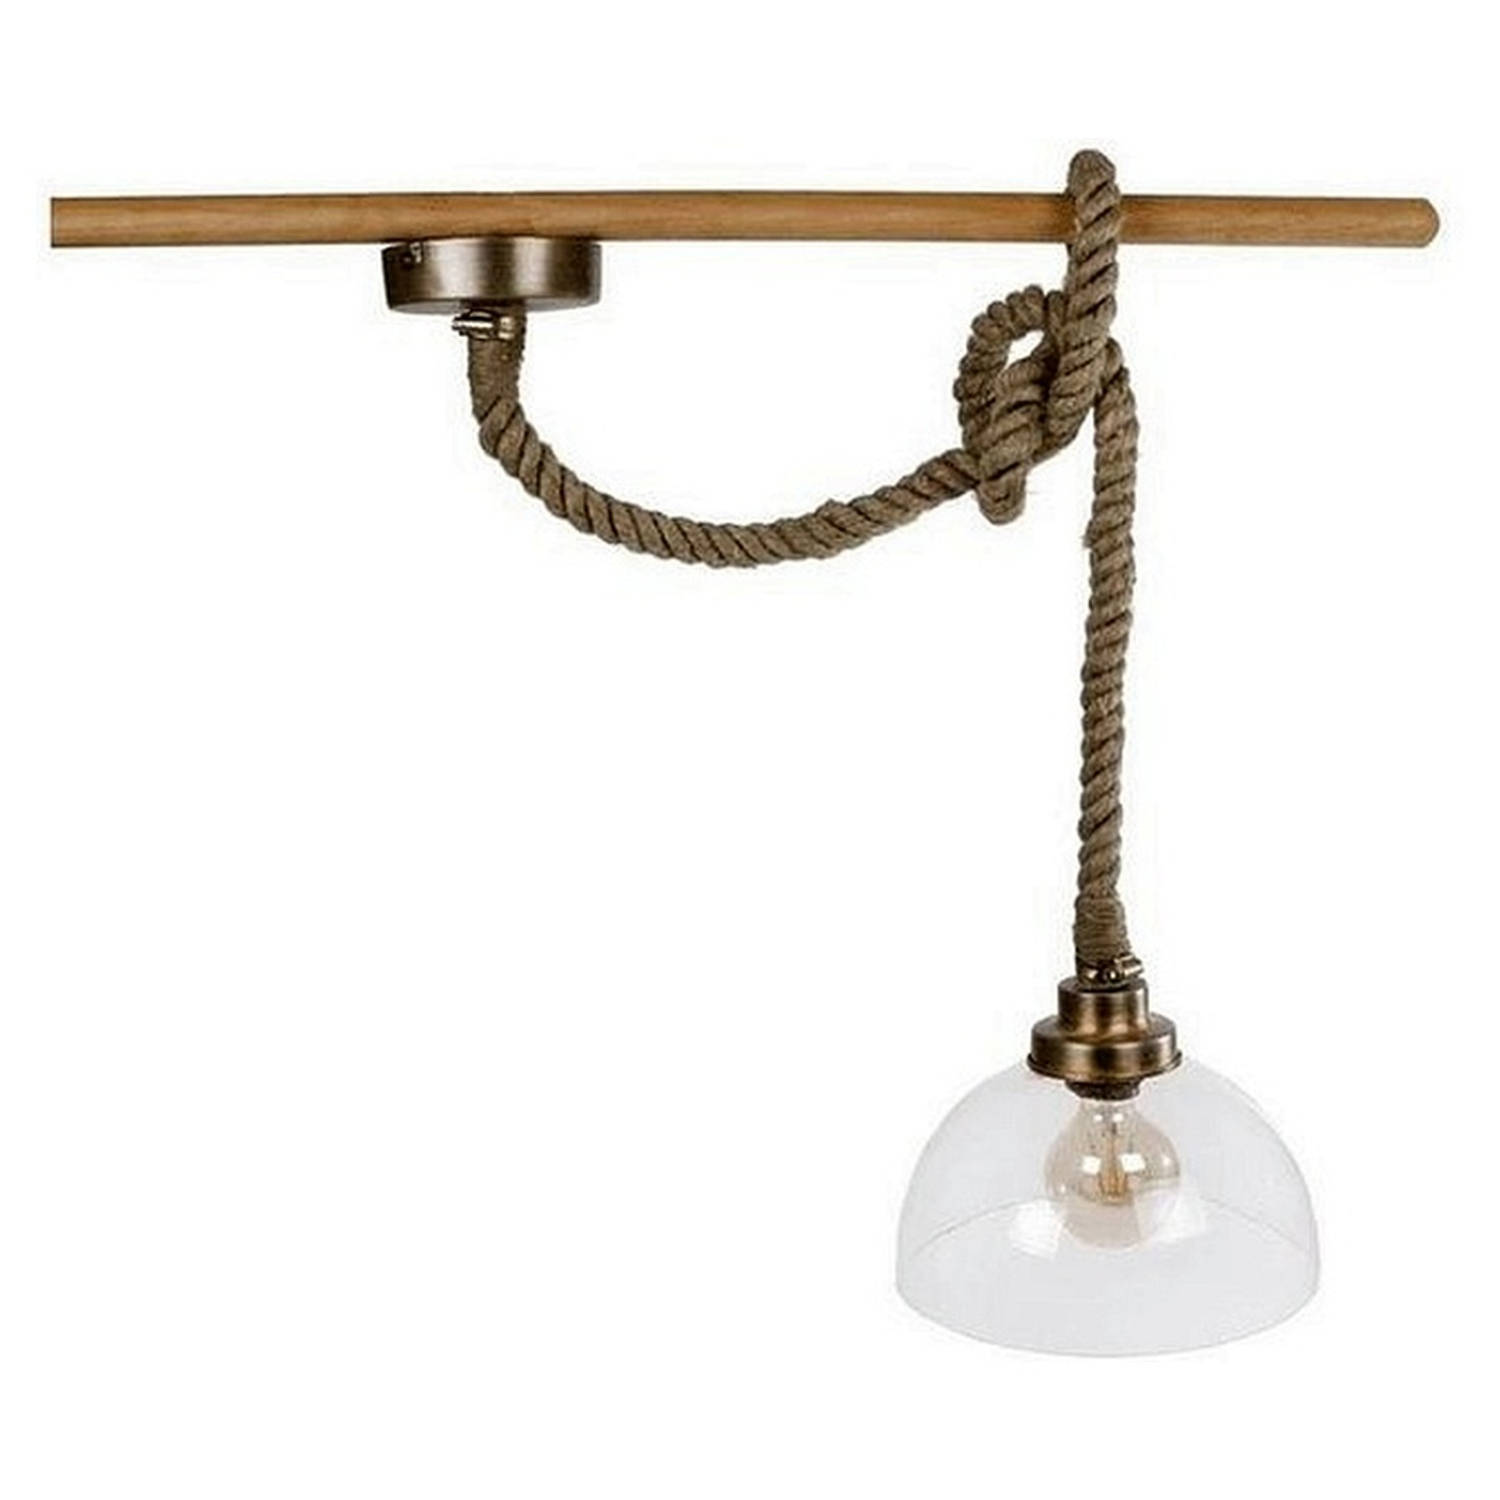 Van Manen hanglamp rond met touw 27x27x22 cm glas-metaal